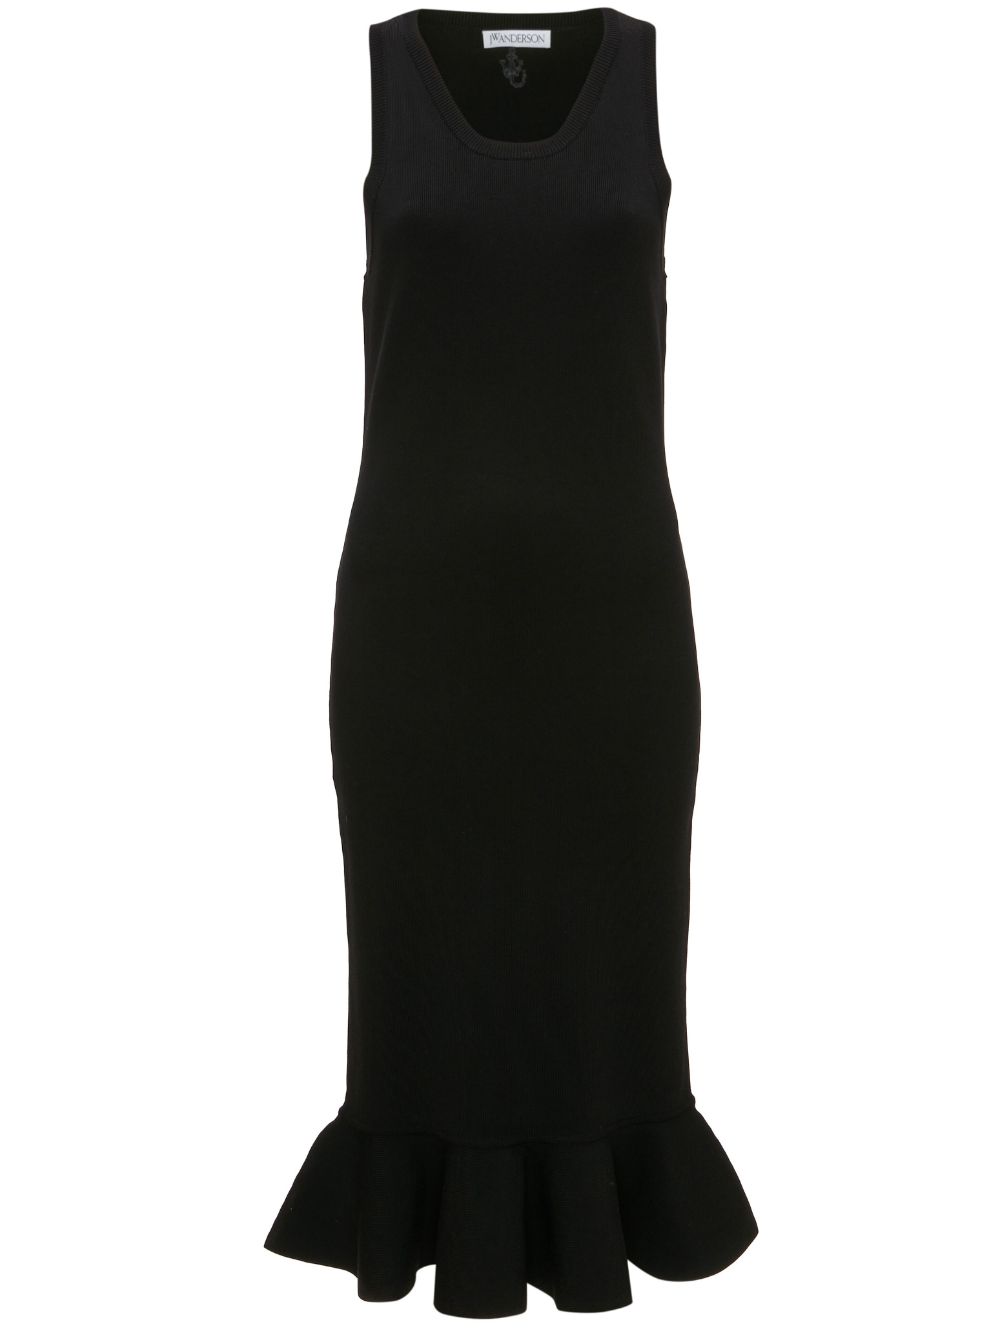 上品な黒のドレス（ブランド名は除外、外国語は使用しない）